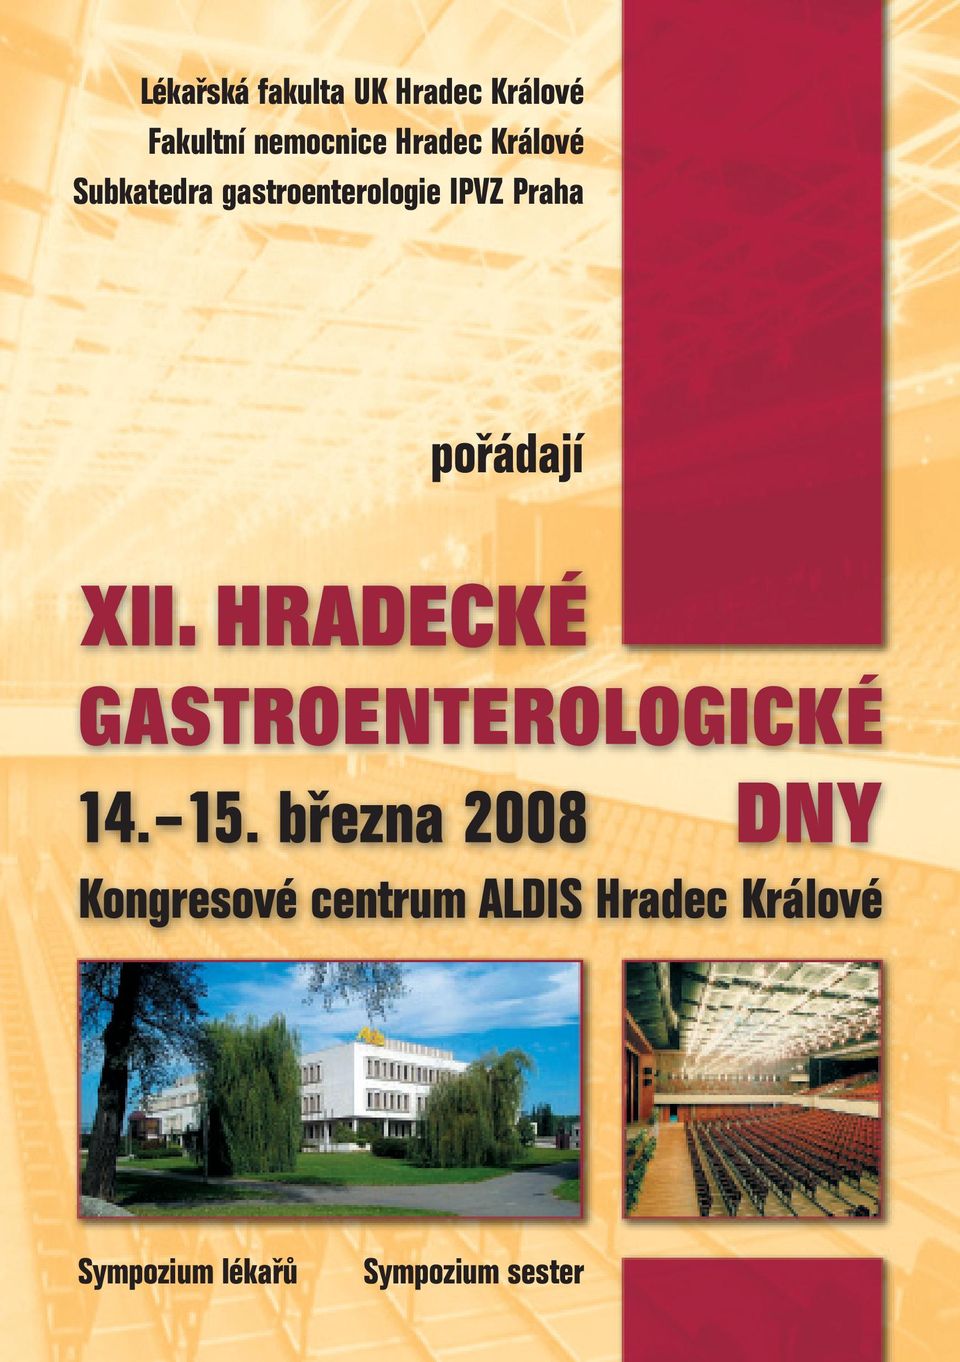 Subkatedra gastroenterologie IPVZ